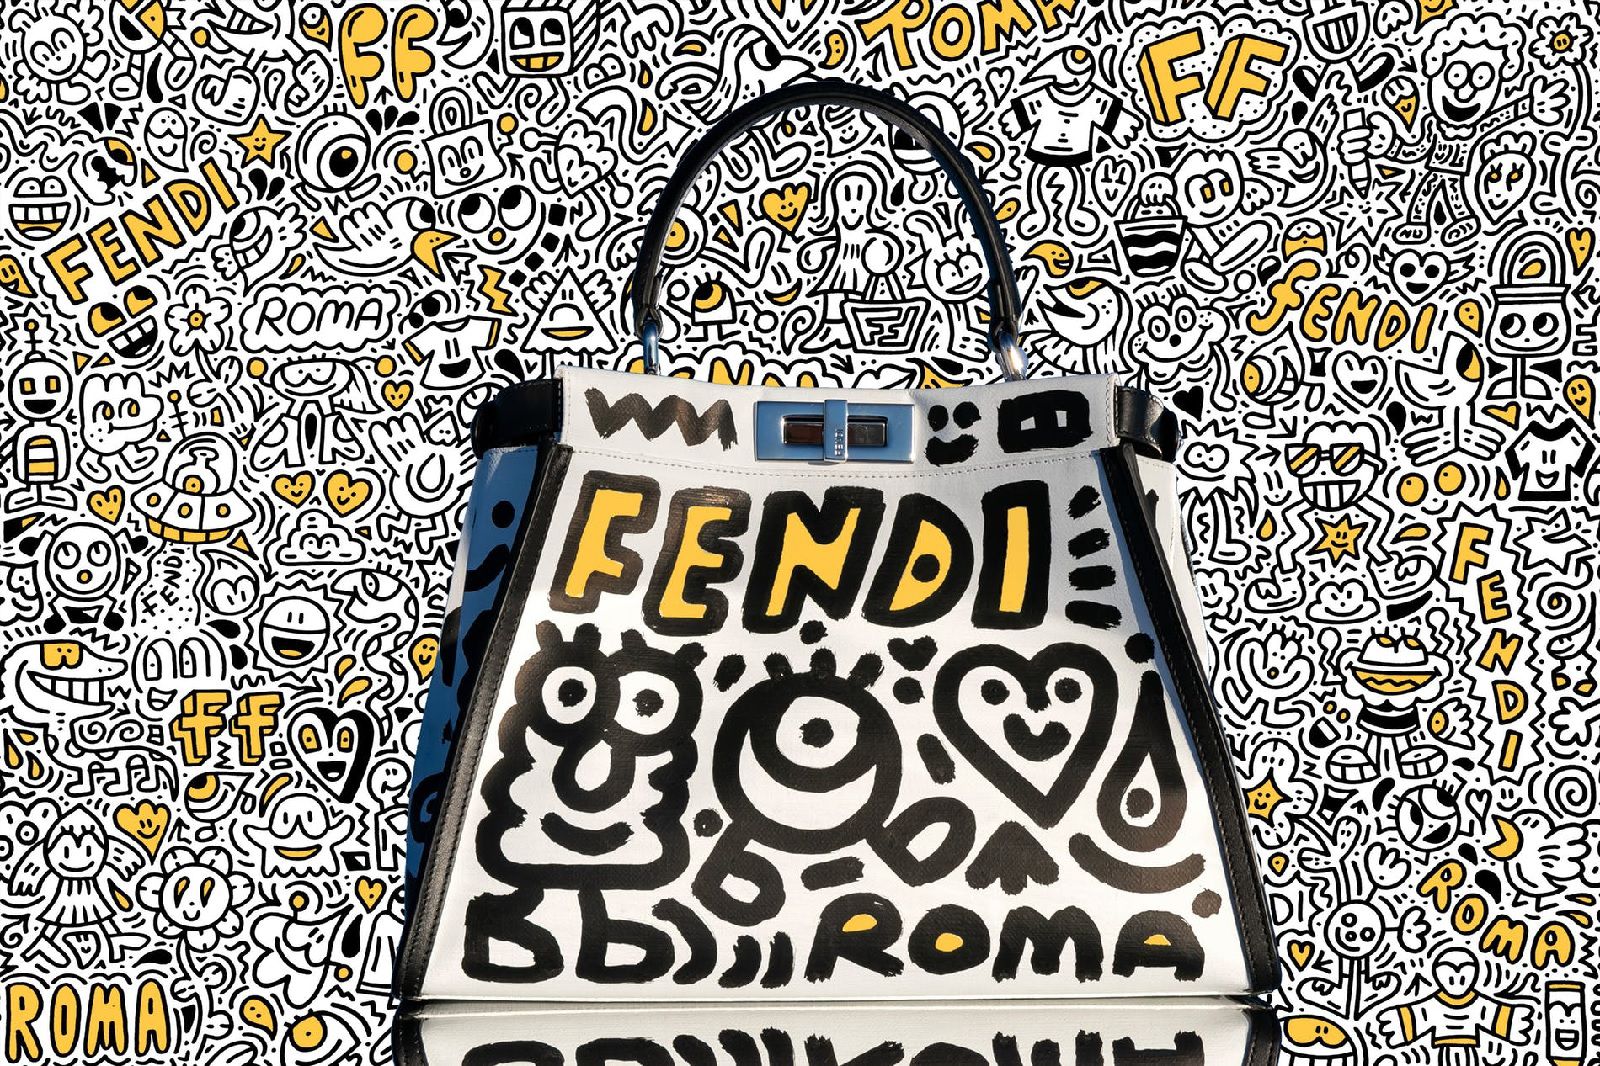 Fendi Presents Mr. Doodle